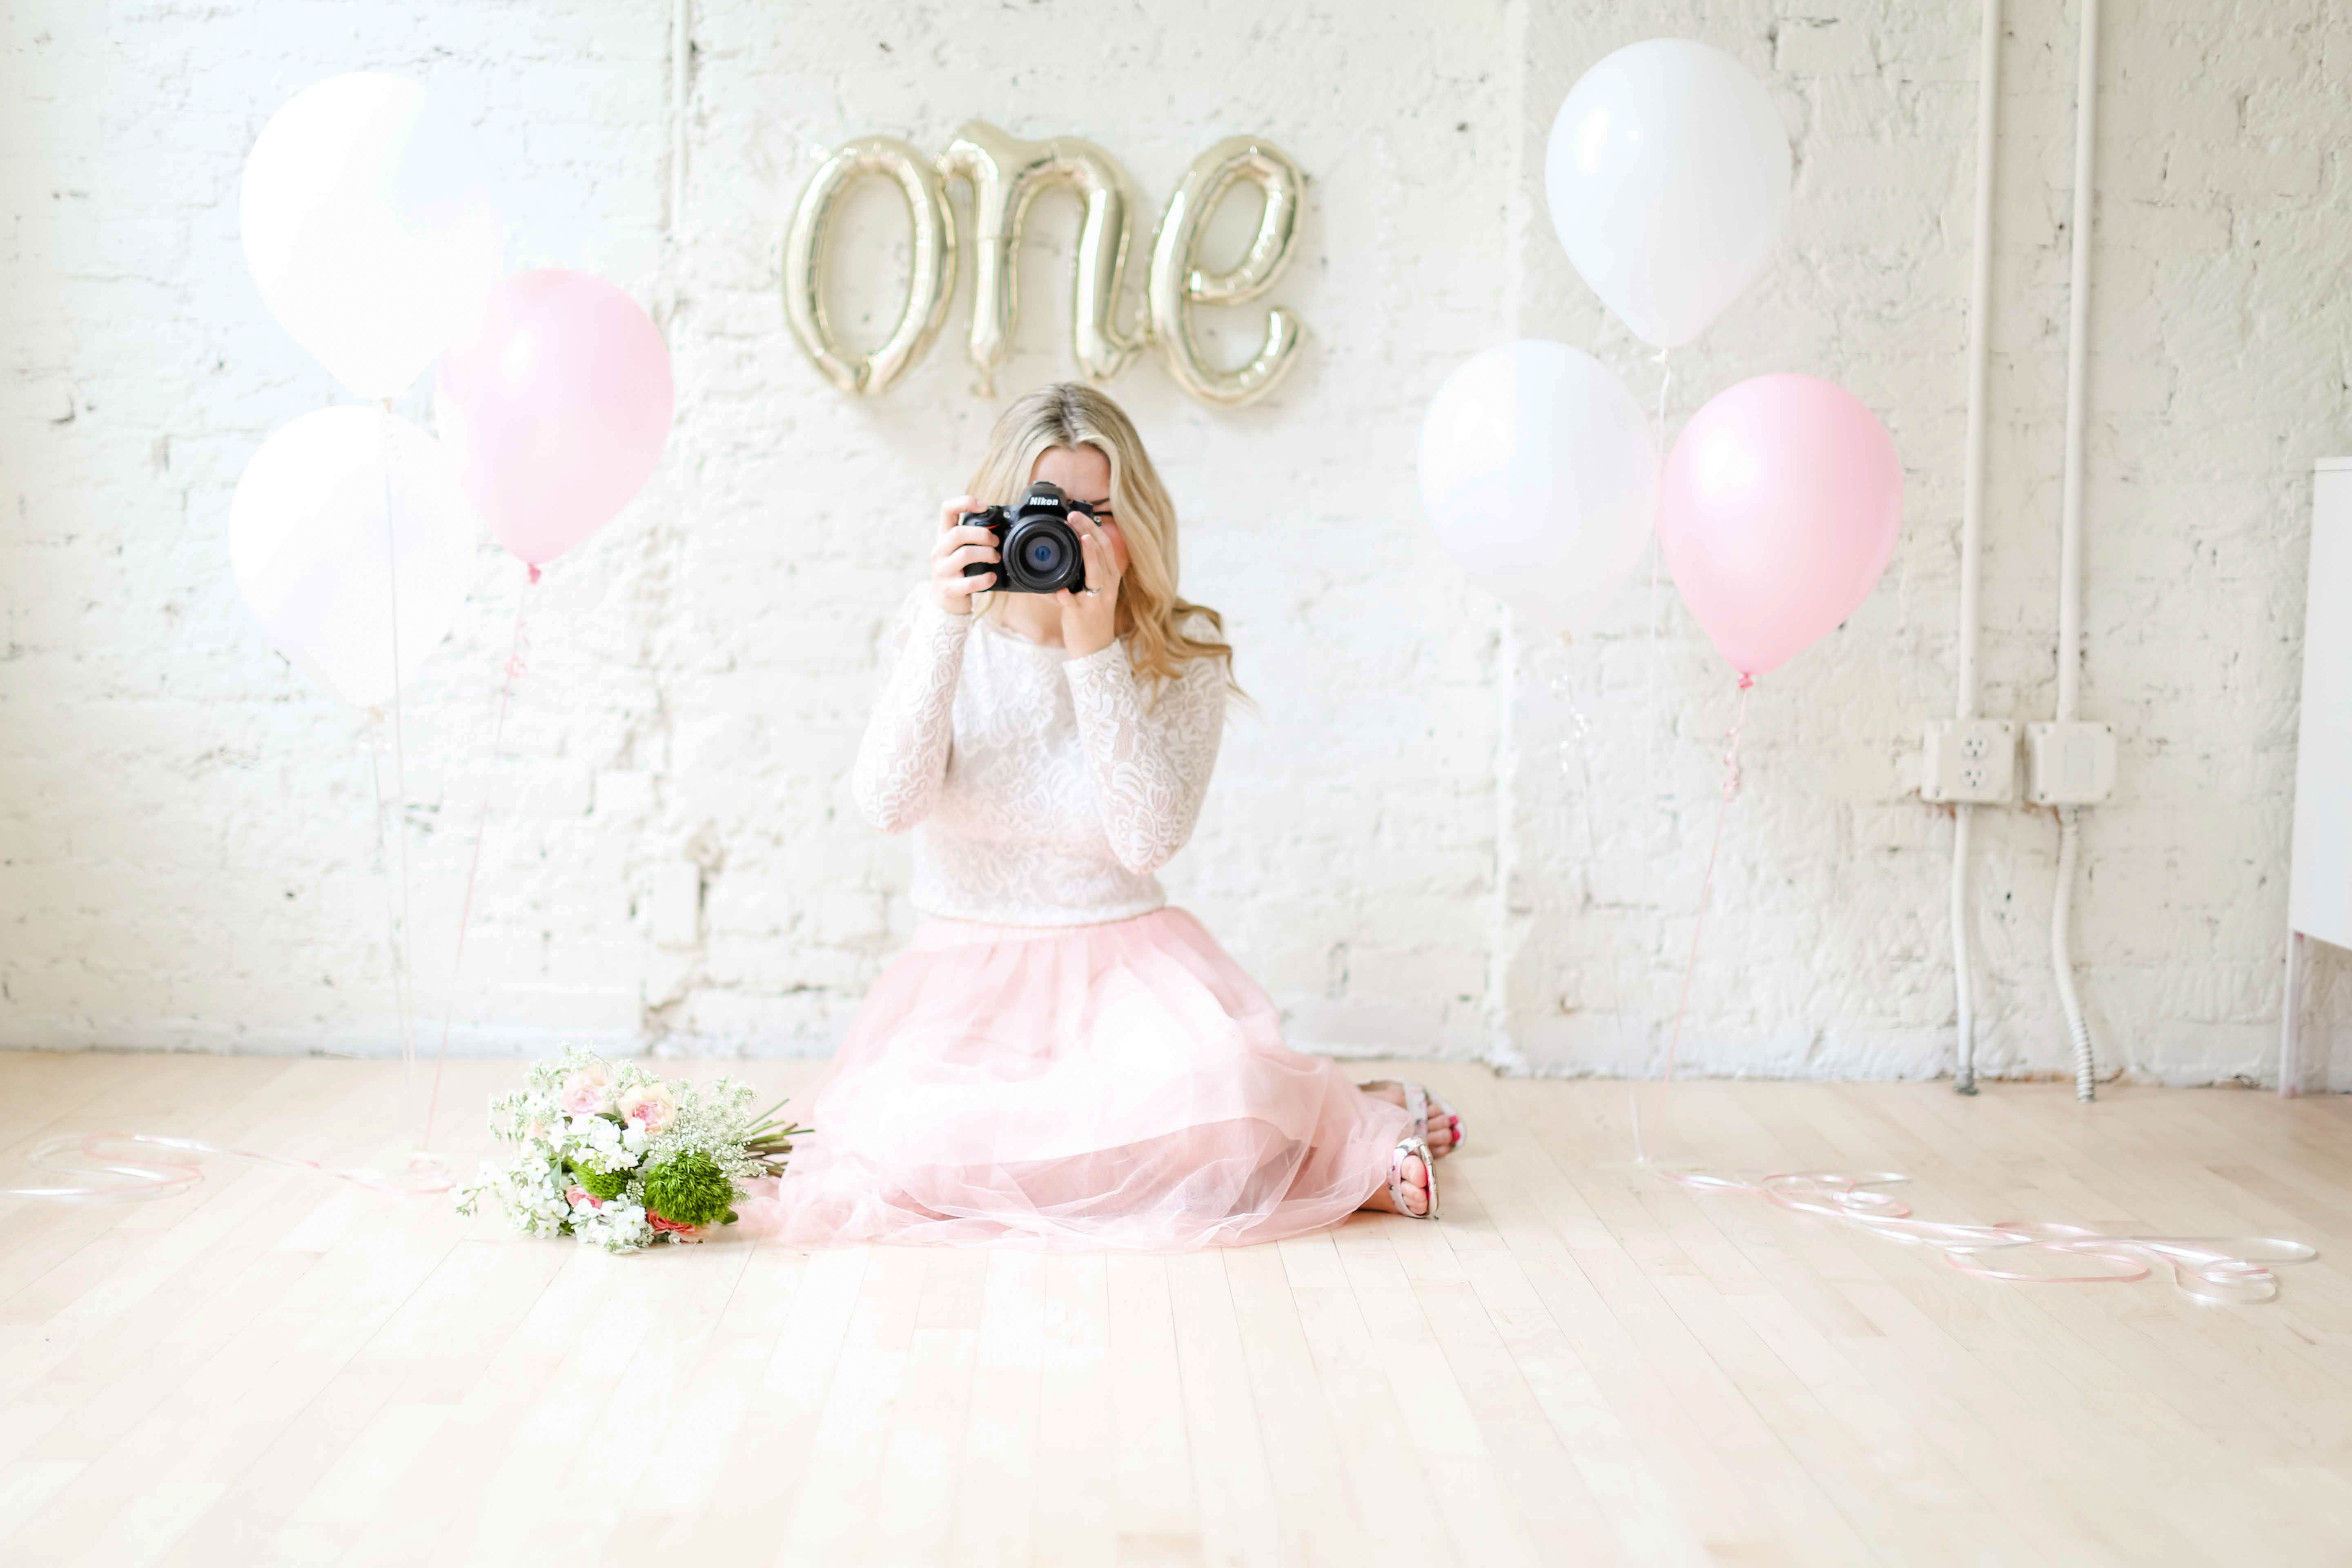 Sweet Williams Photography, One Year Celebration, Wedding Photographer, Ohio and Destination